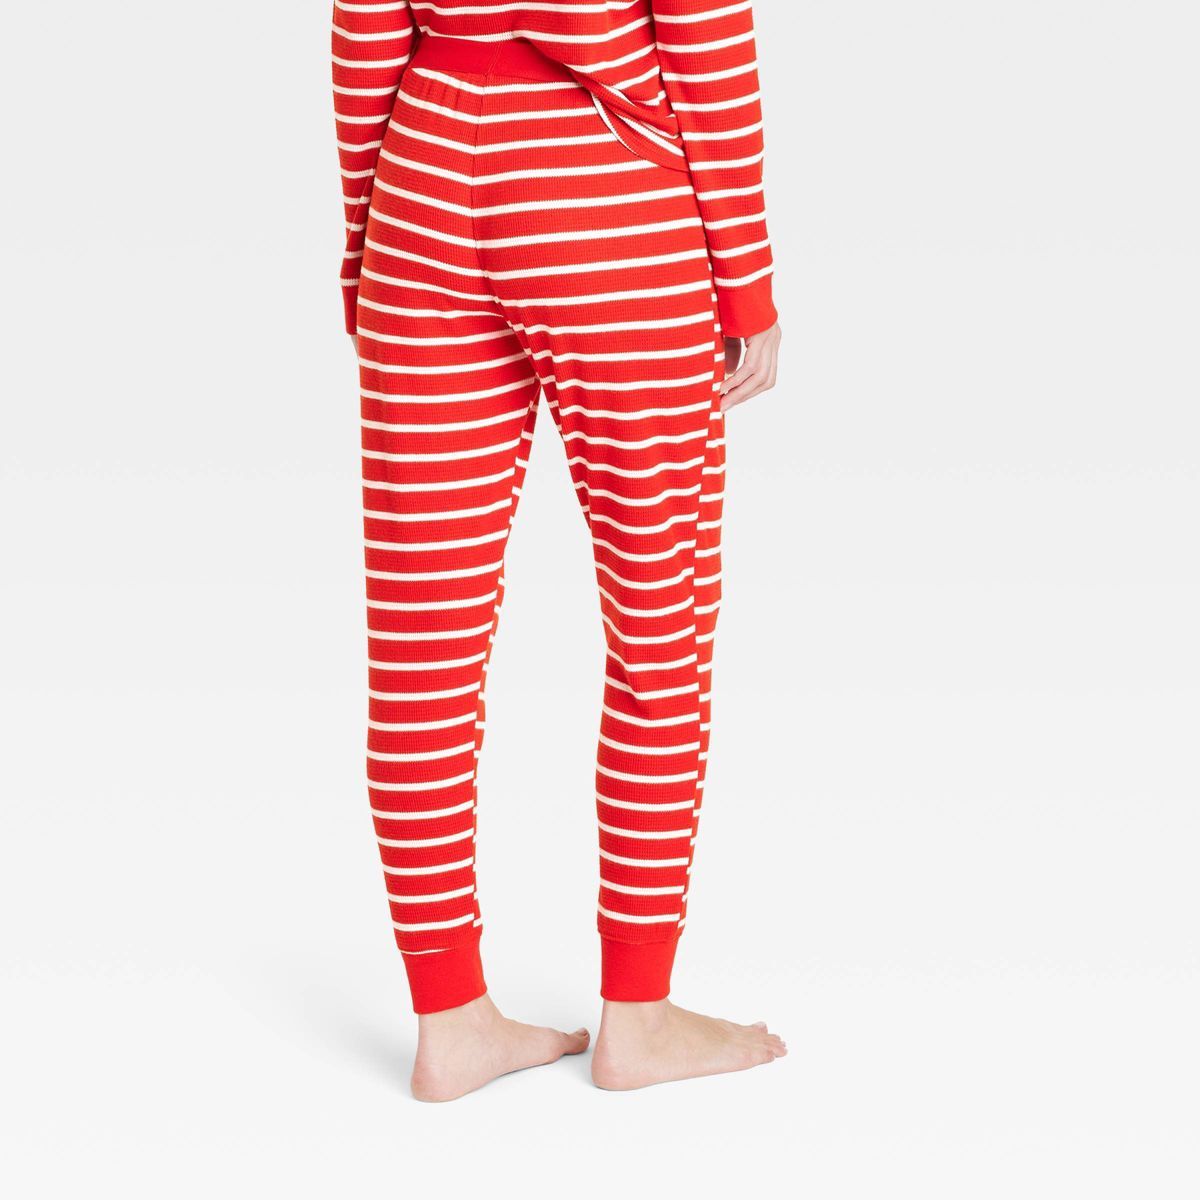 Women's Striped Matching Family Thermal Pajama Pants - Wondershop™ Red XS | Target